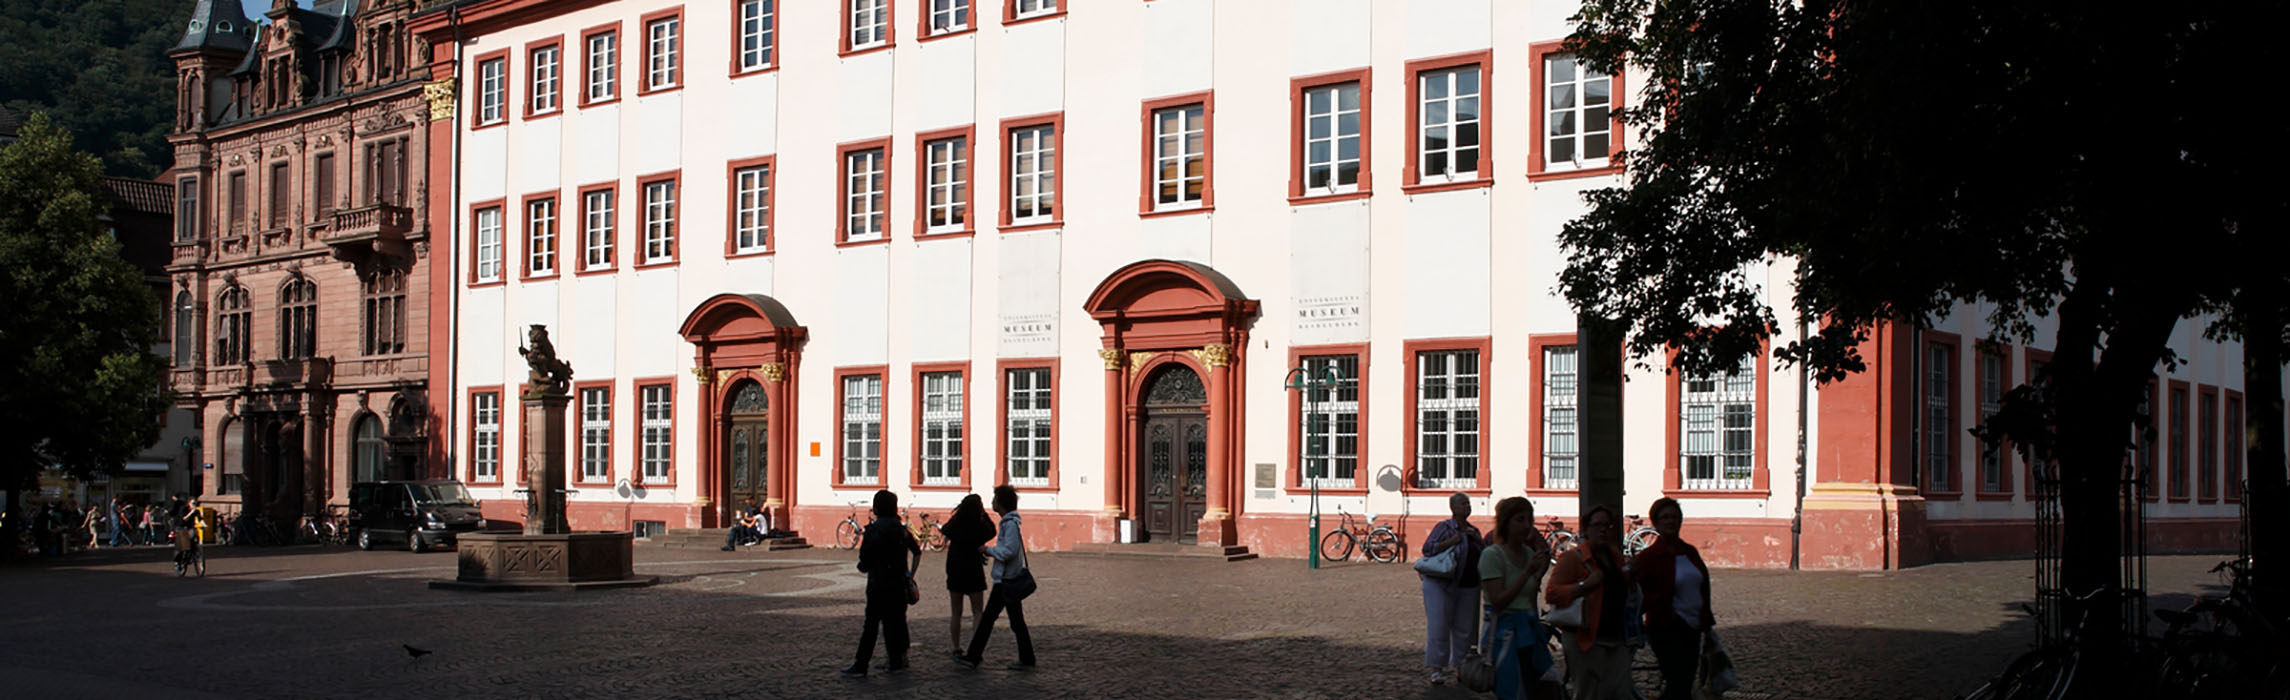 Heidelberg University (Photo: Heidelberg University)